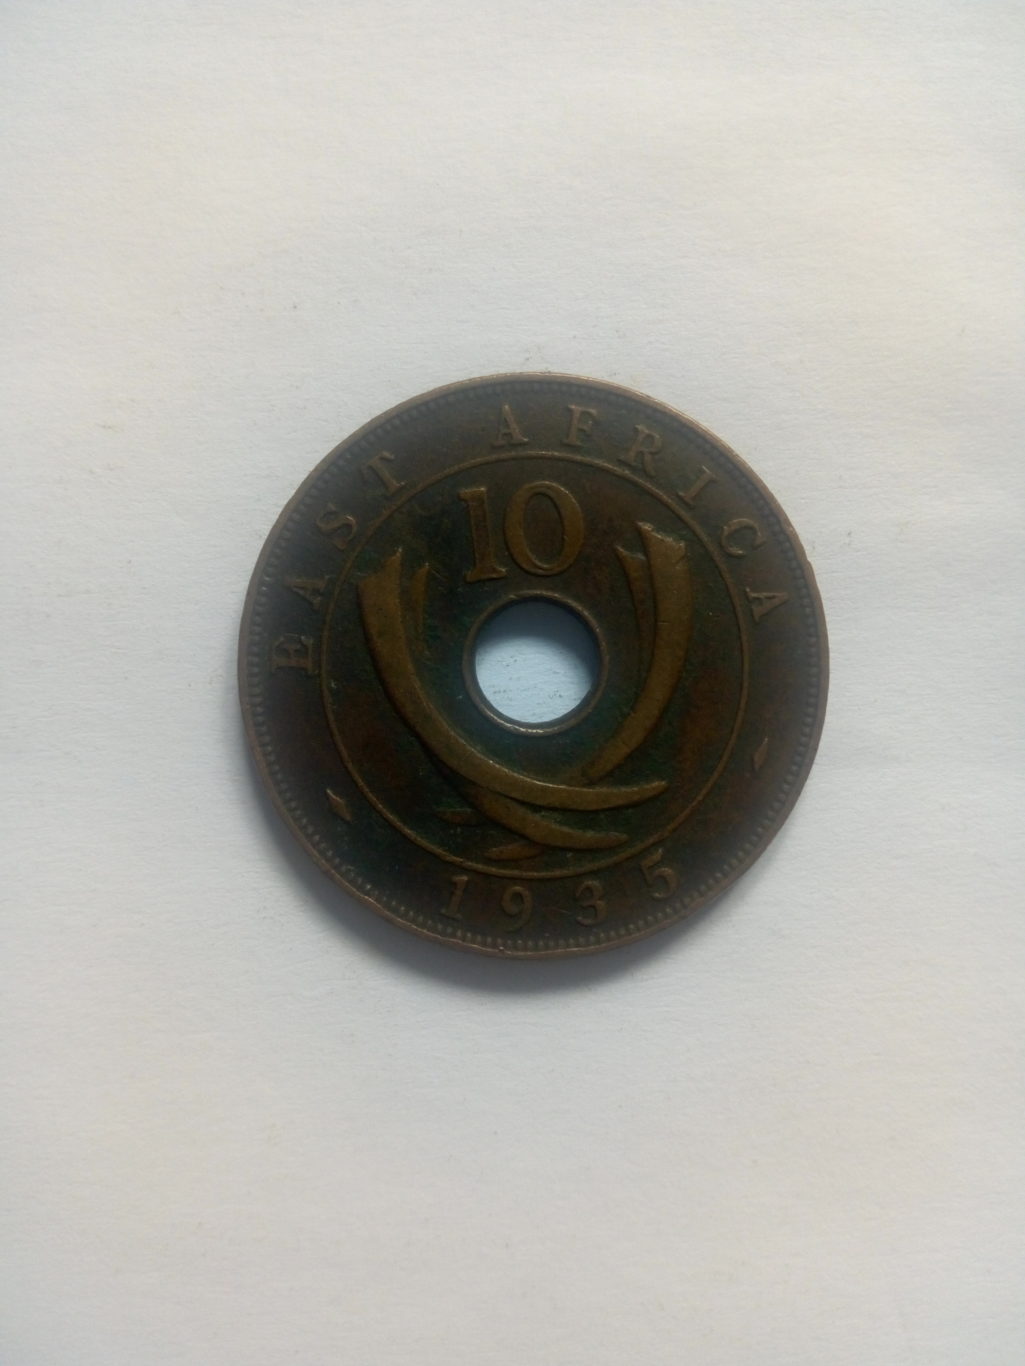 1935_georgivs V 10 cents